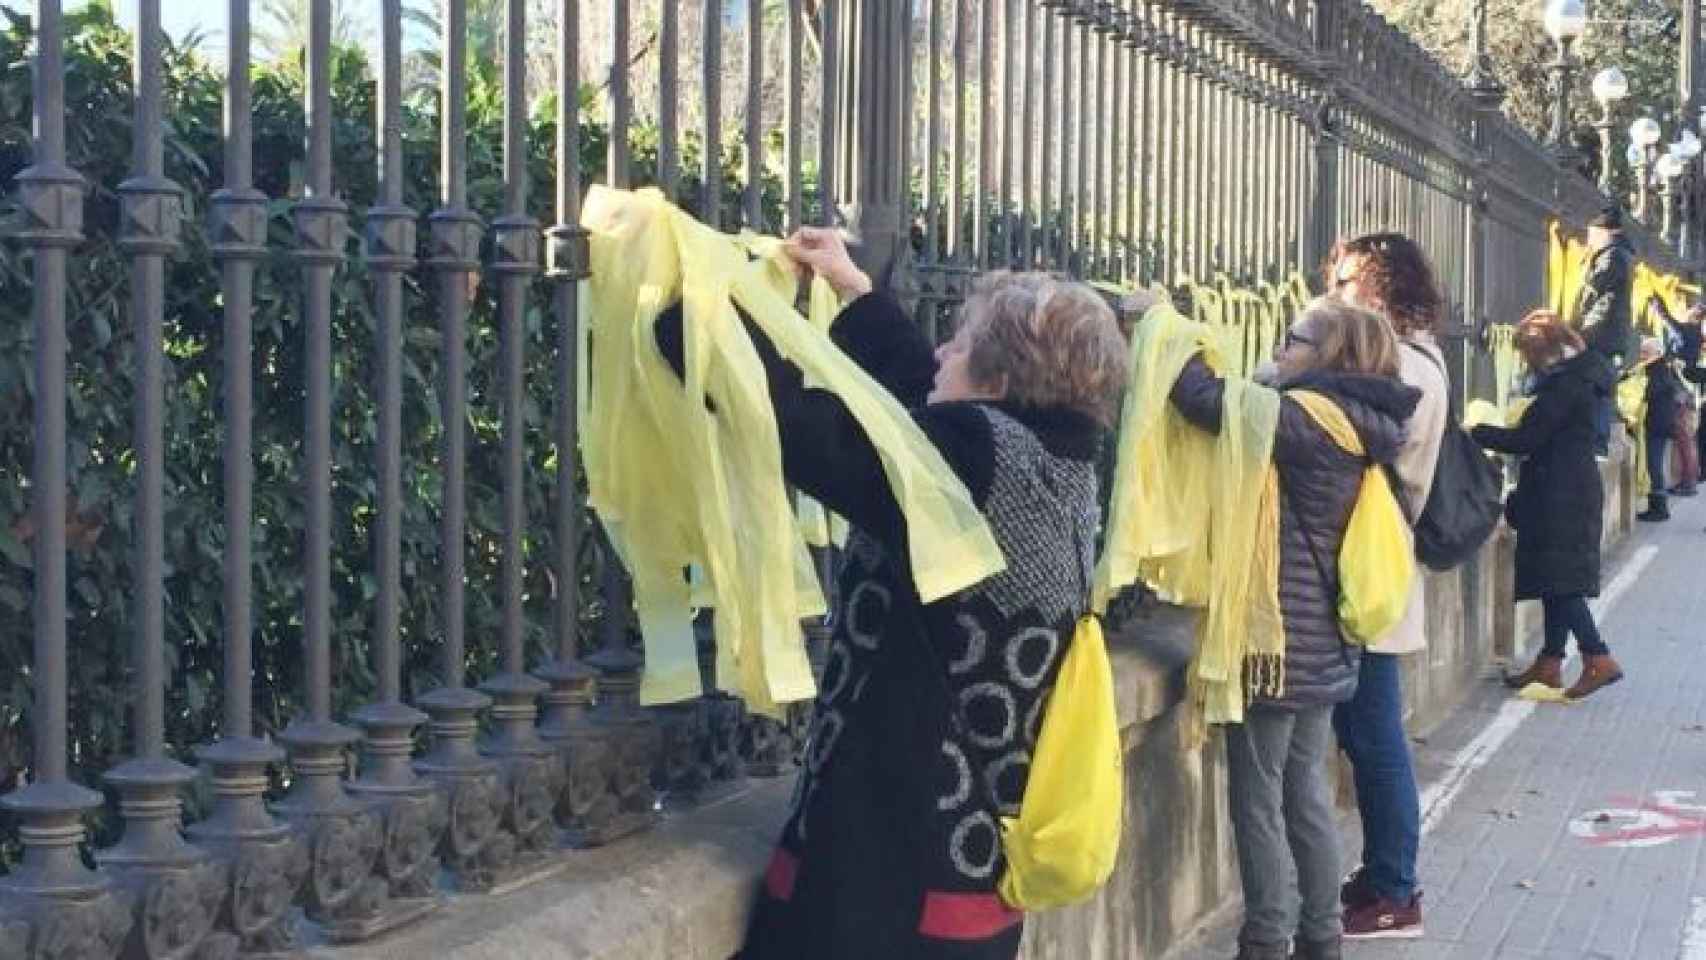 Imágenes de lazos amarillos en el Parque de la Ciutadella, donde una mujer ha sido agredida por quitar un símbolo / CG